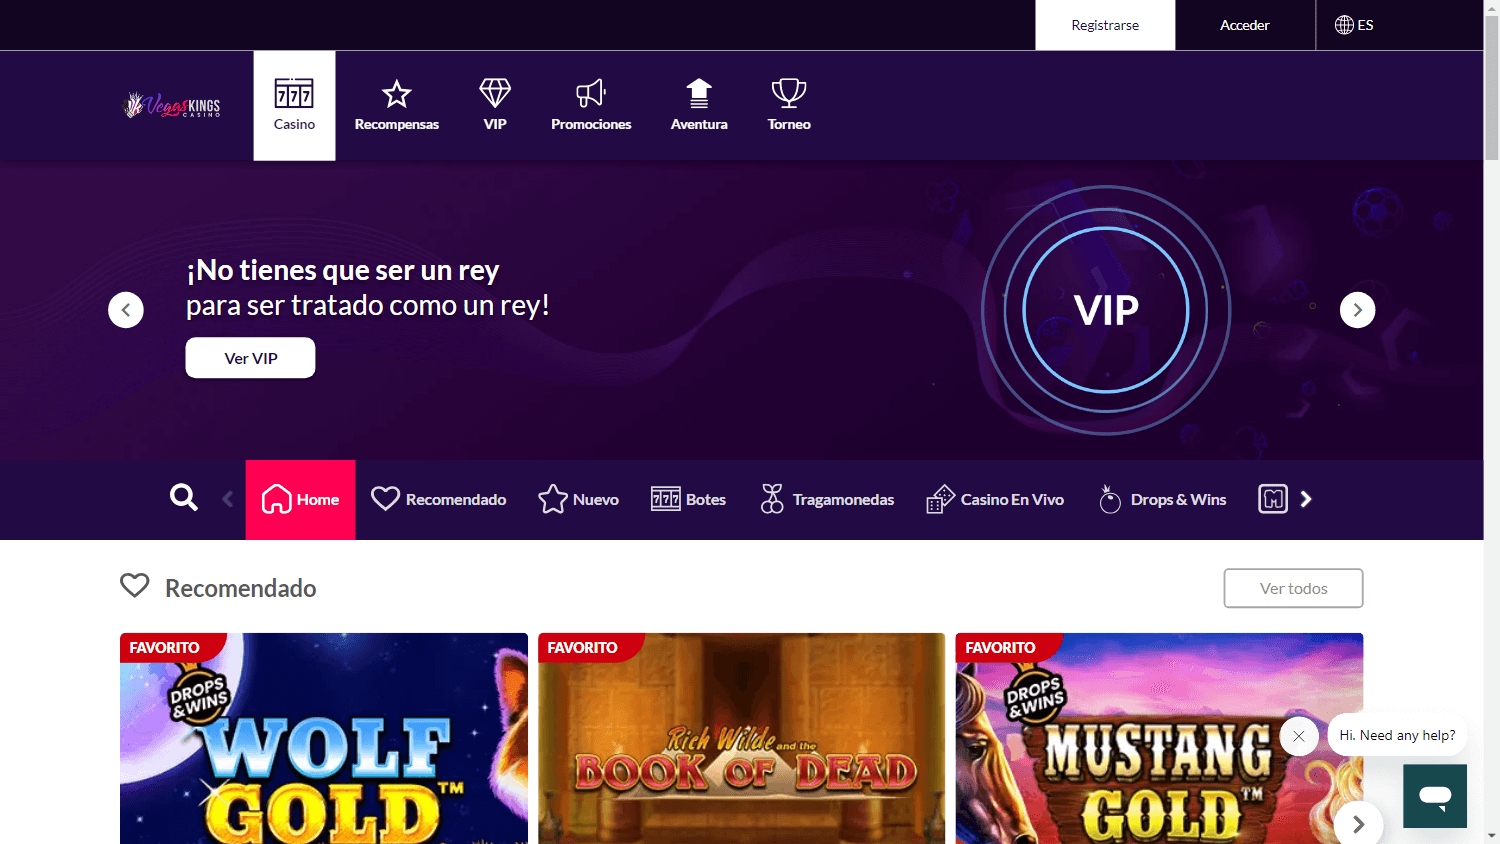 vegas_kings_casino_homepage_desktop